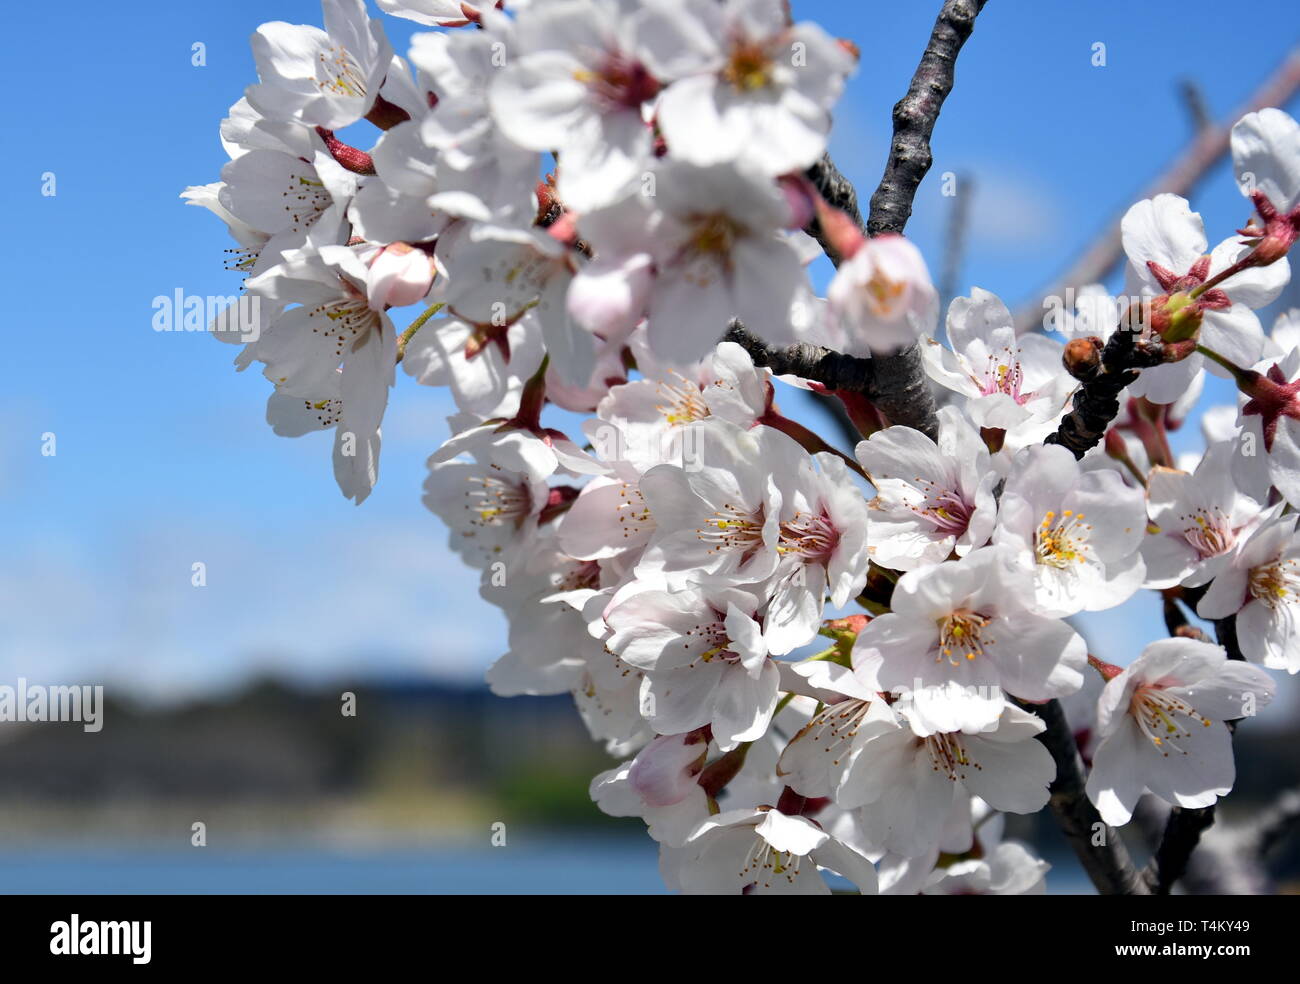 Blanca Rosa flor de cerezo en flor. Flores de cerezo en pequeños grupos en  una rama del árbol de cerezo. Sakura Japanese cerezos en flor en el jardín  botánico de GARD Fotografía